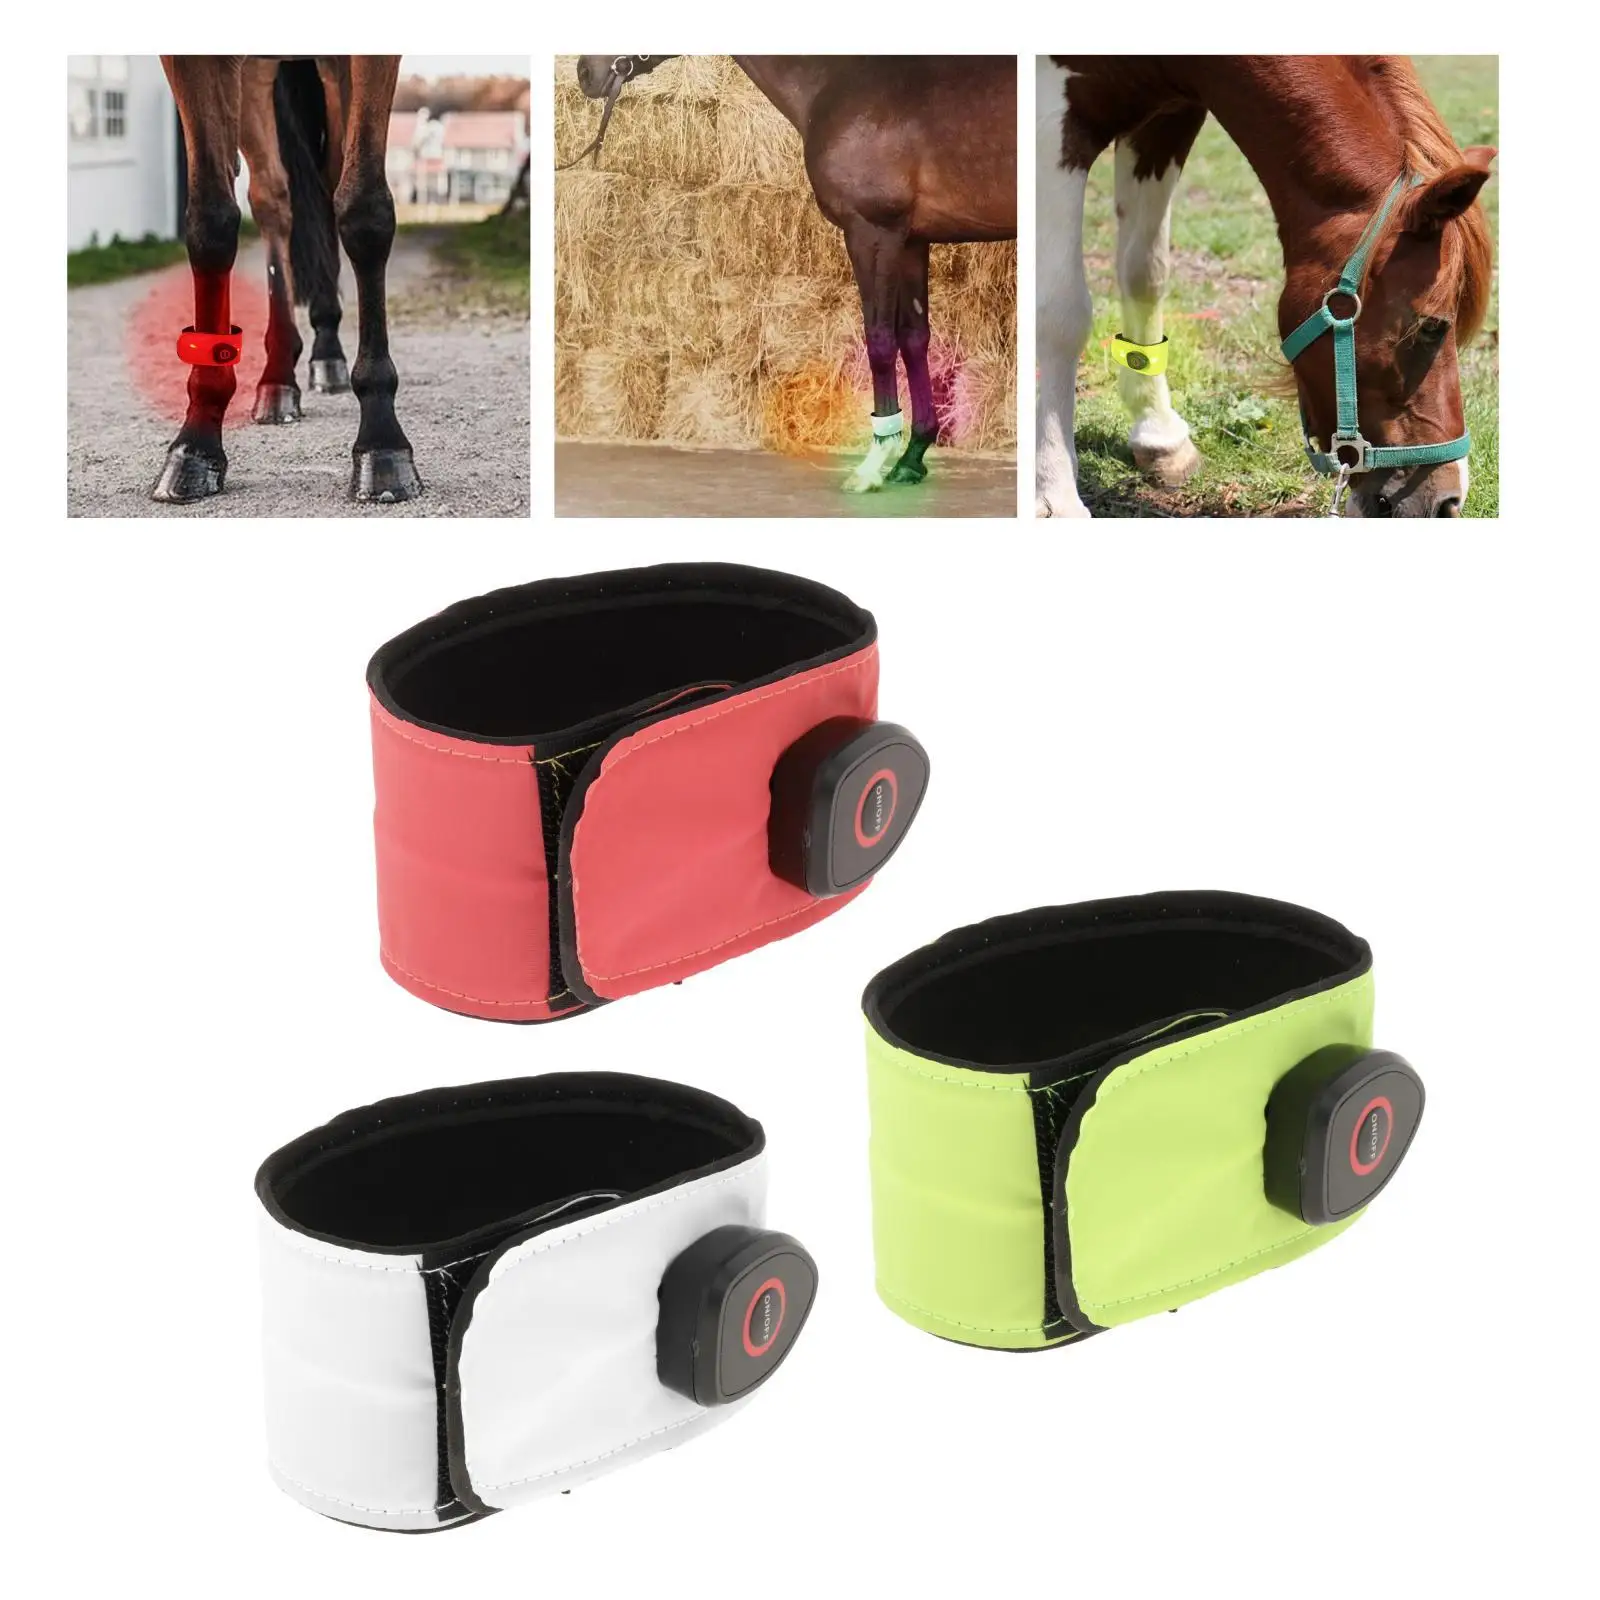 Neoprene Reflective Horse LED Ankle Strap Protection, Belt Safety Bands Legging